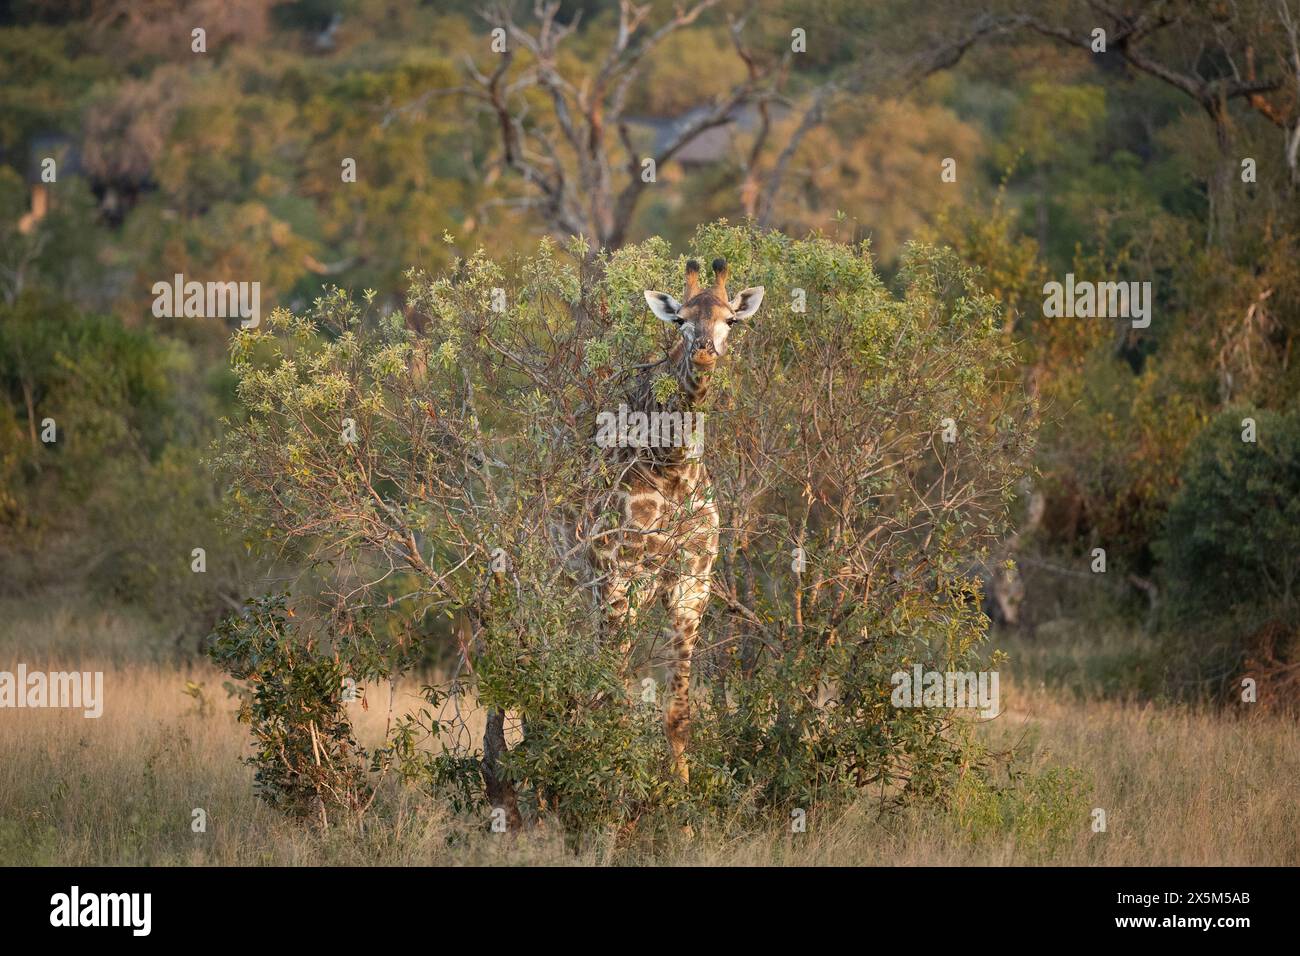 Une girafe, Giraffa, qui se nourrit. Banque D'Images